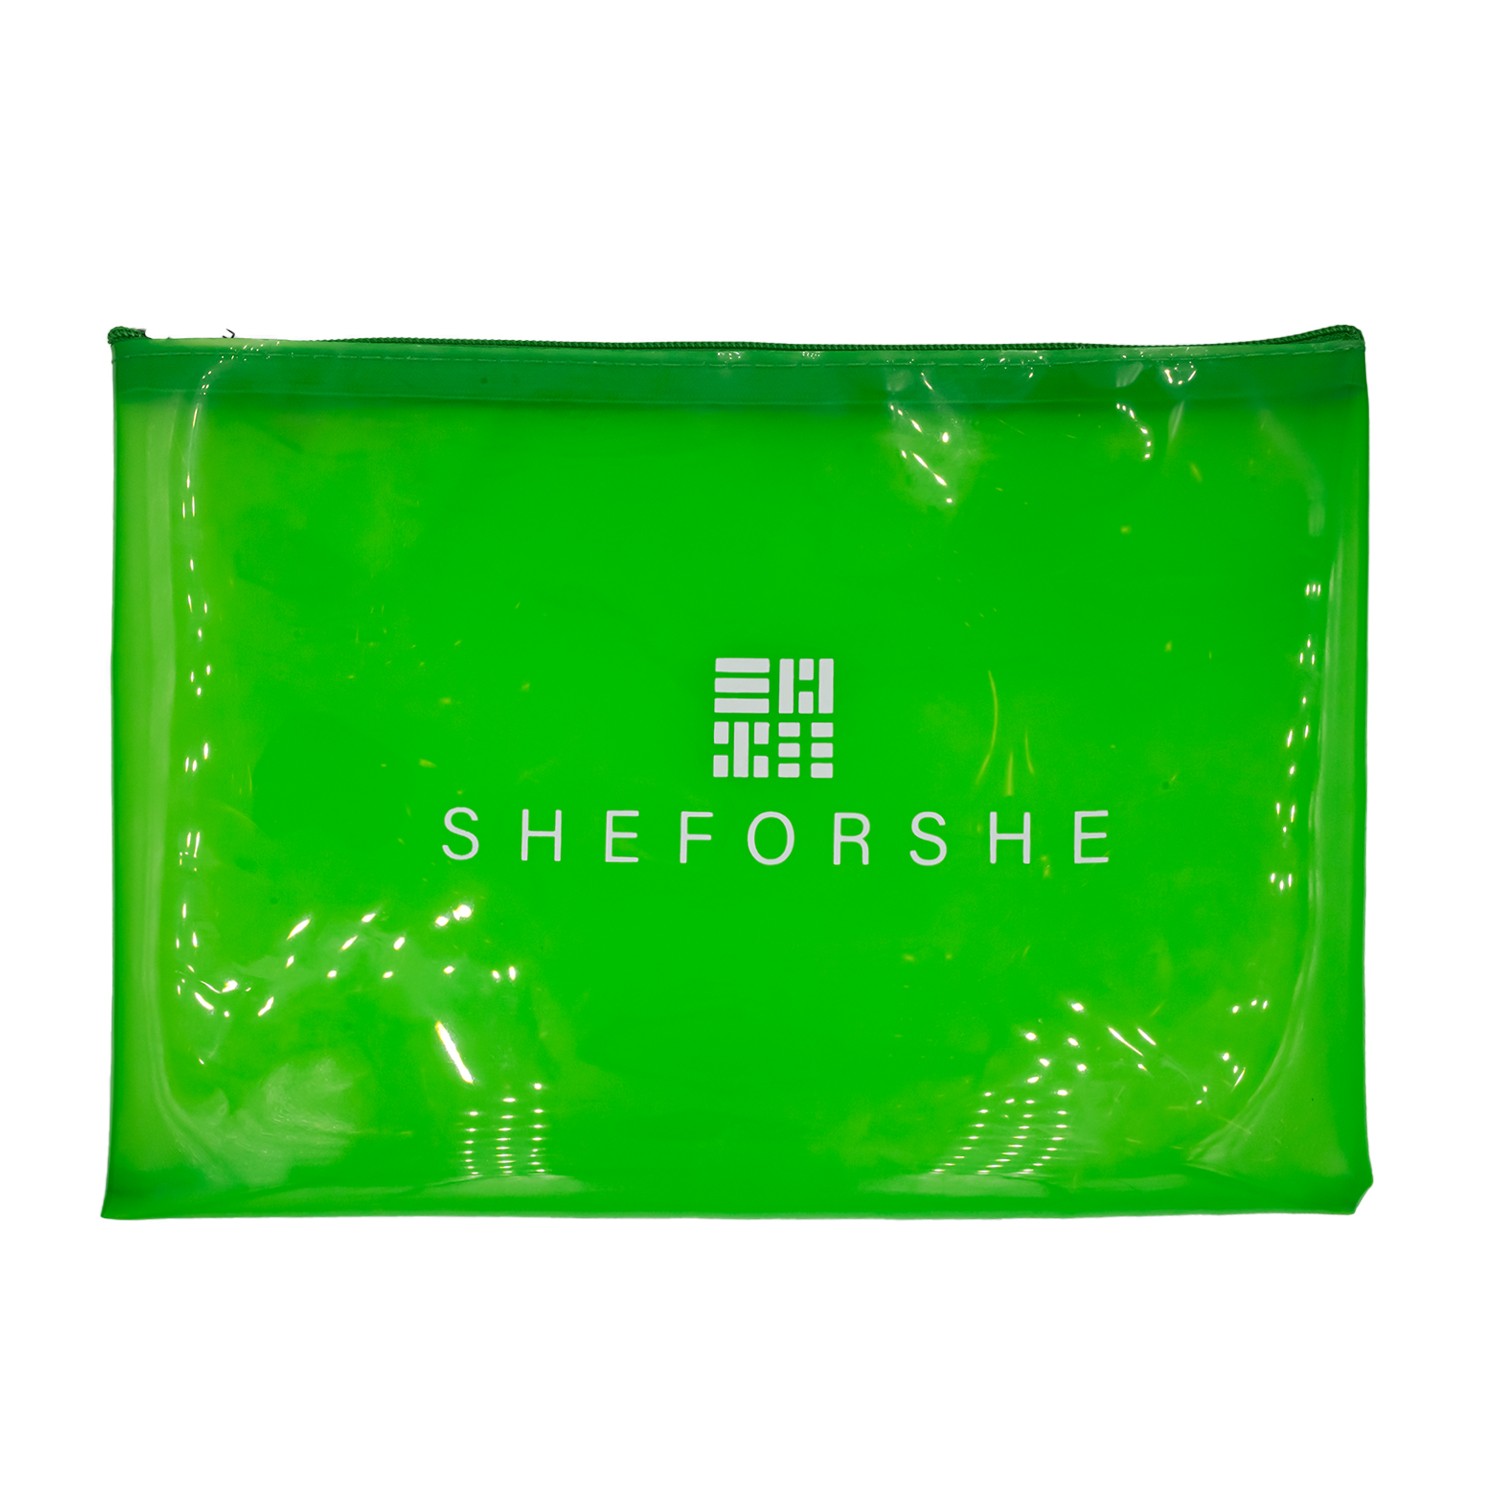 Sheforshe Poliüratan Suya Dayanıklı Şeffaf Çanta - Yeşil